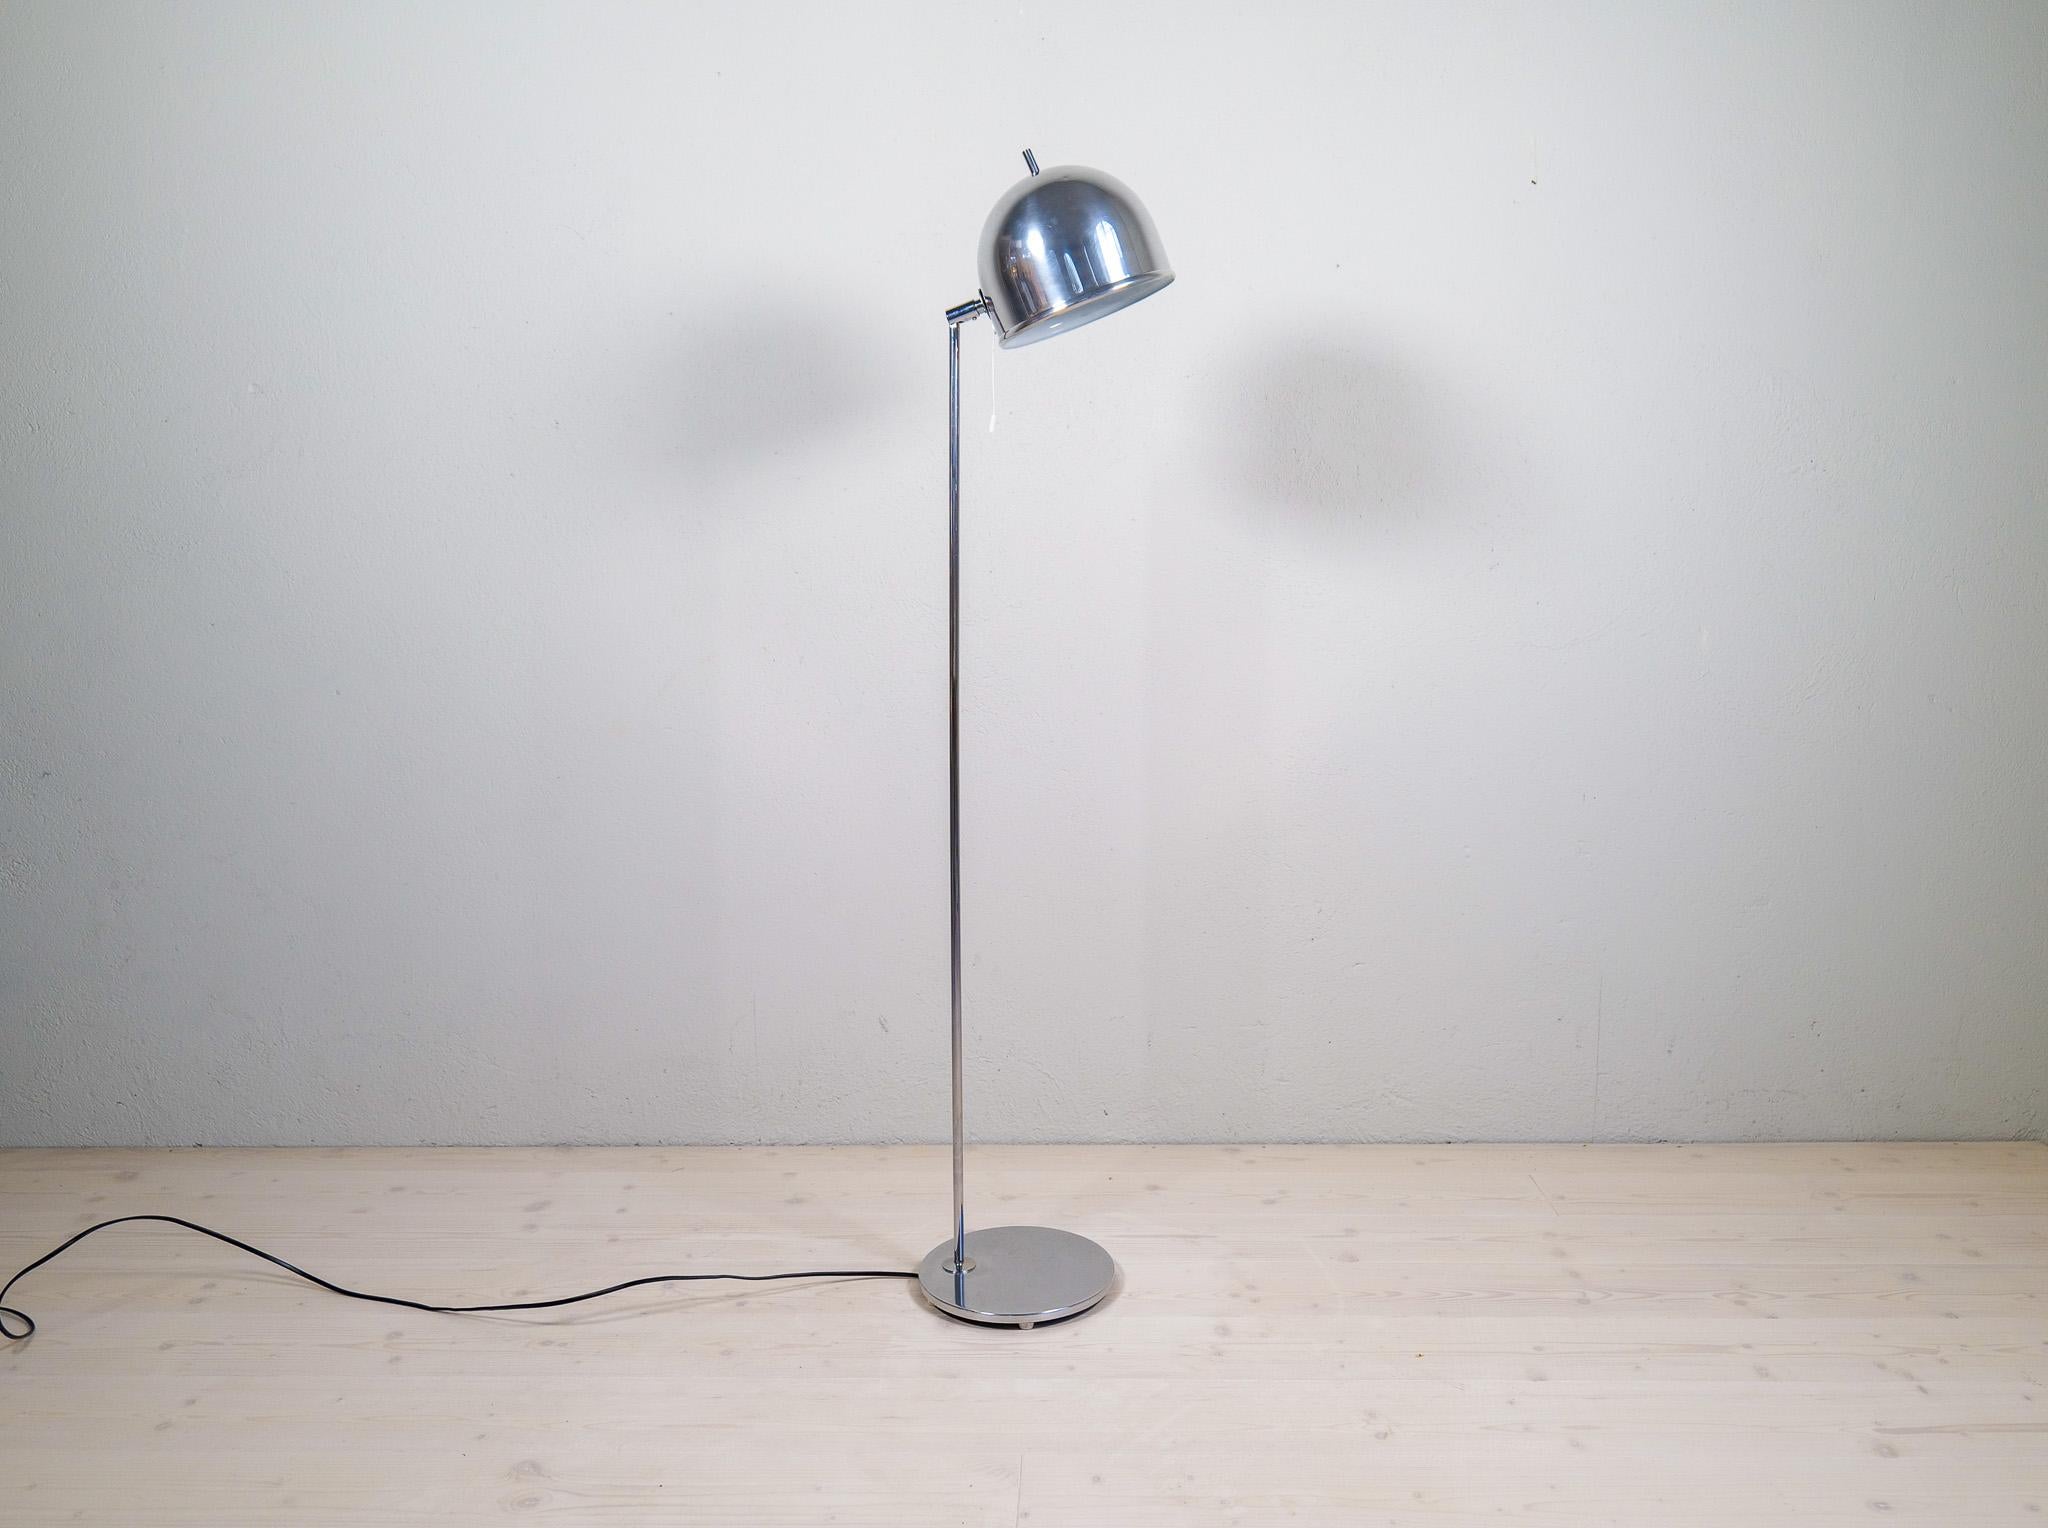 Scandinavian Modern Midcentury Modern Floor Lamp in Chrome, Model G-075, Bergboms, Sweden, 1960s For Sale